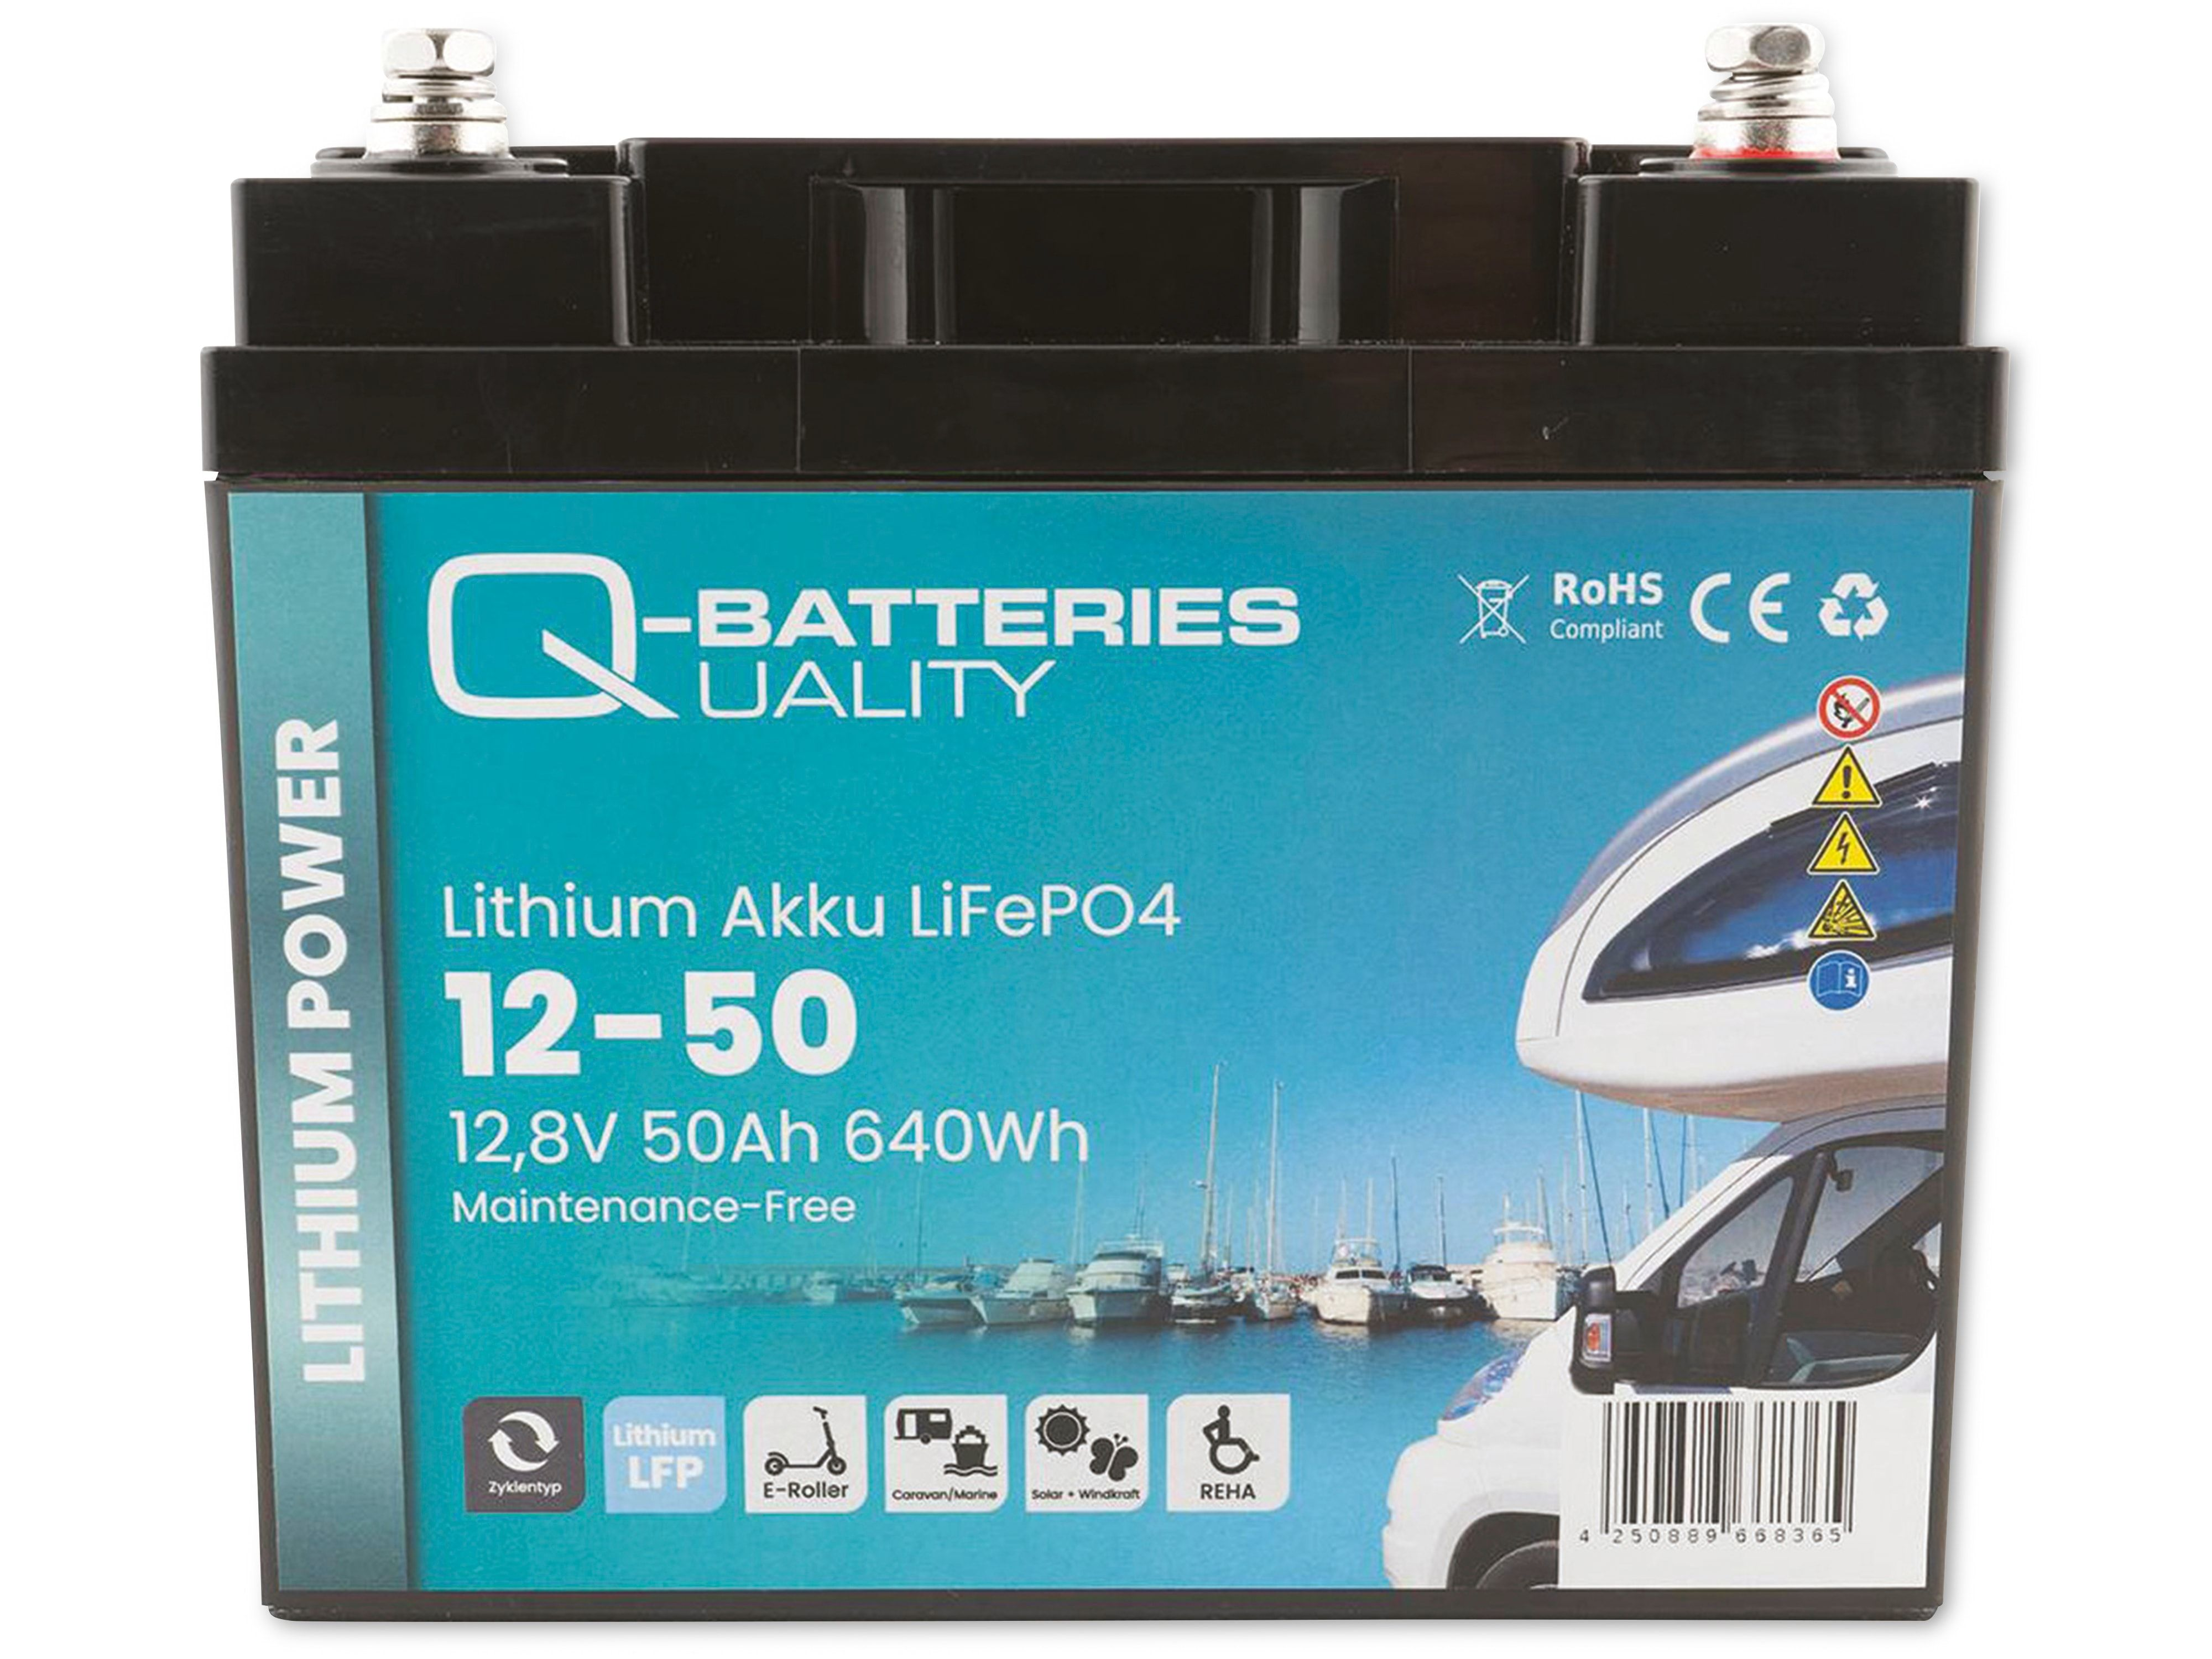 Lithium 640Wh 12,8V, Lithium-Eisenphosphat Akku Akku 50Ah LiFePO4 12-50 Q-BATTERIES Batterie